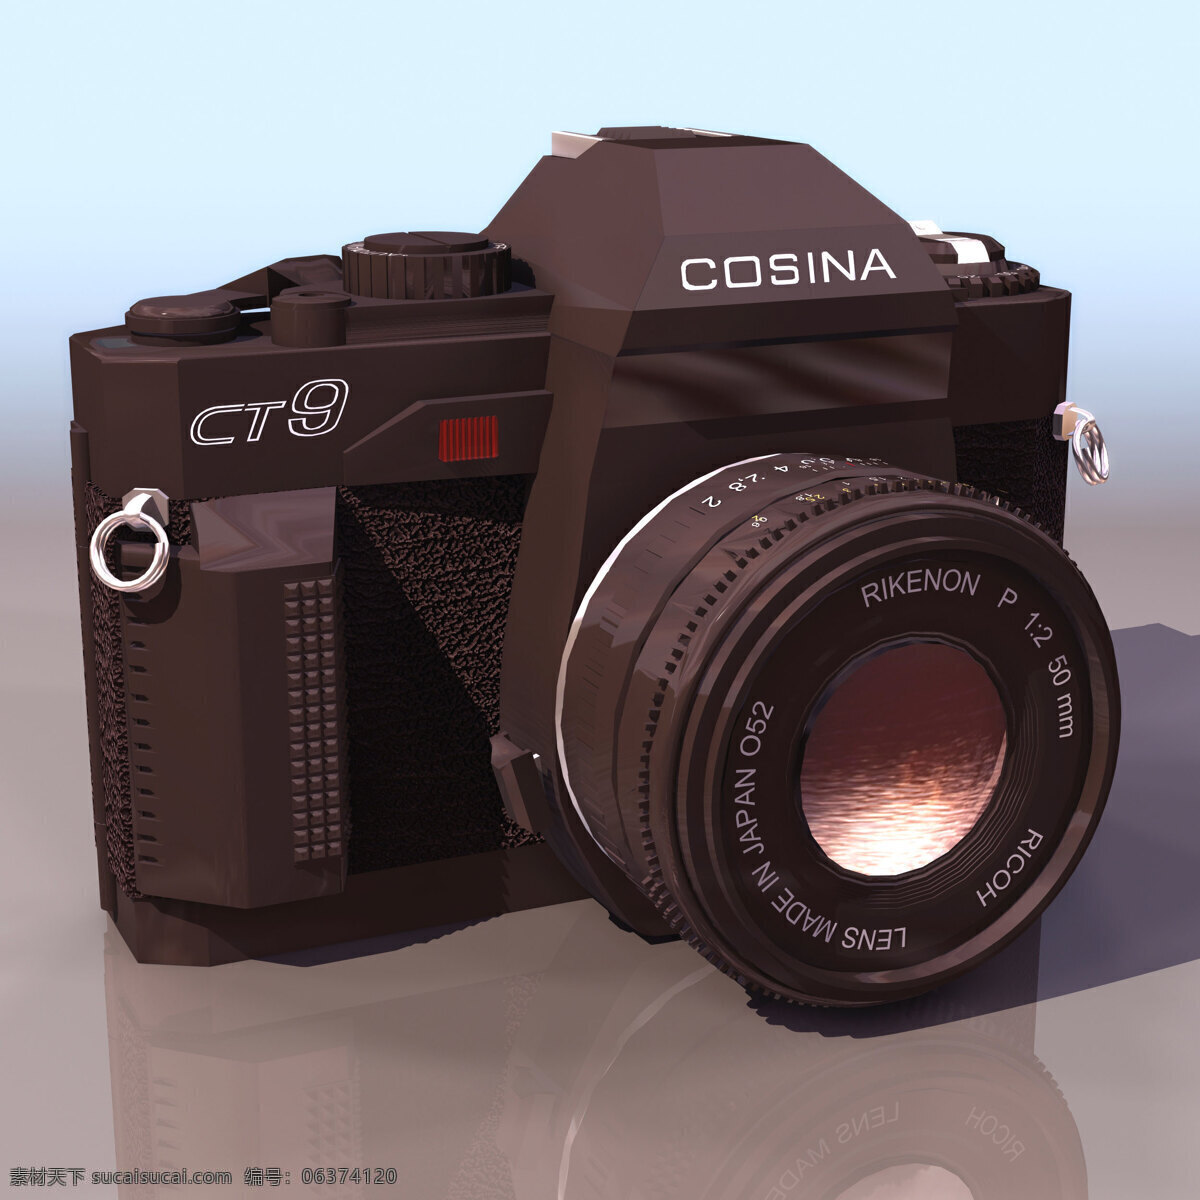 照相机 模型 cosina 数码电器 相机 照相机模型 3d模型素材 电器模型